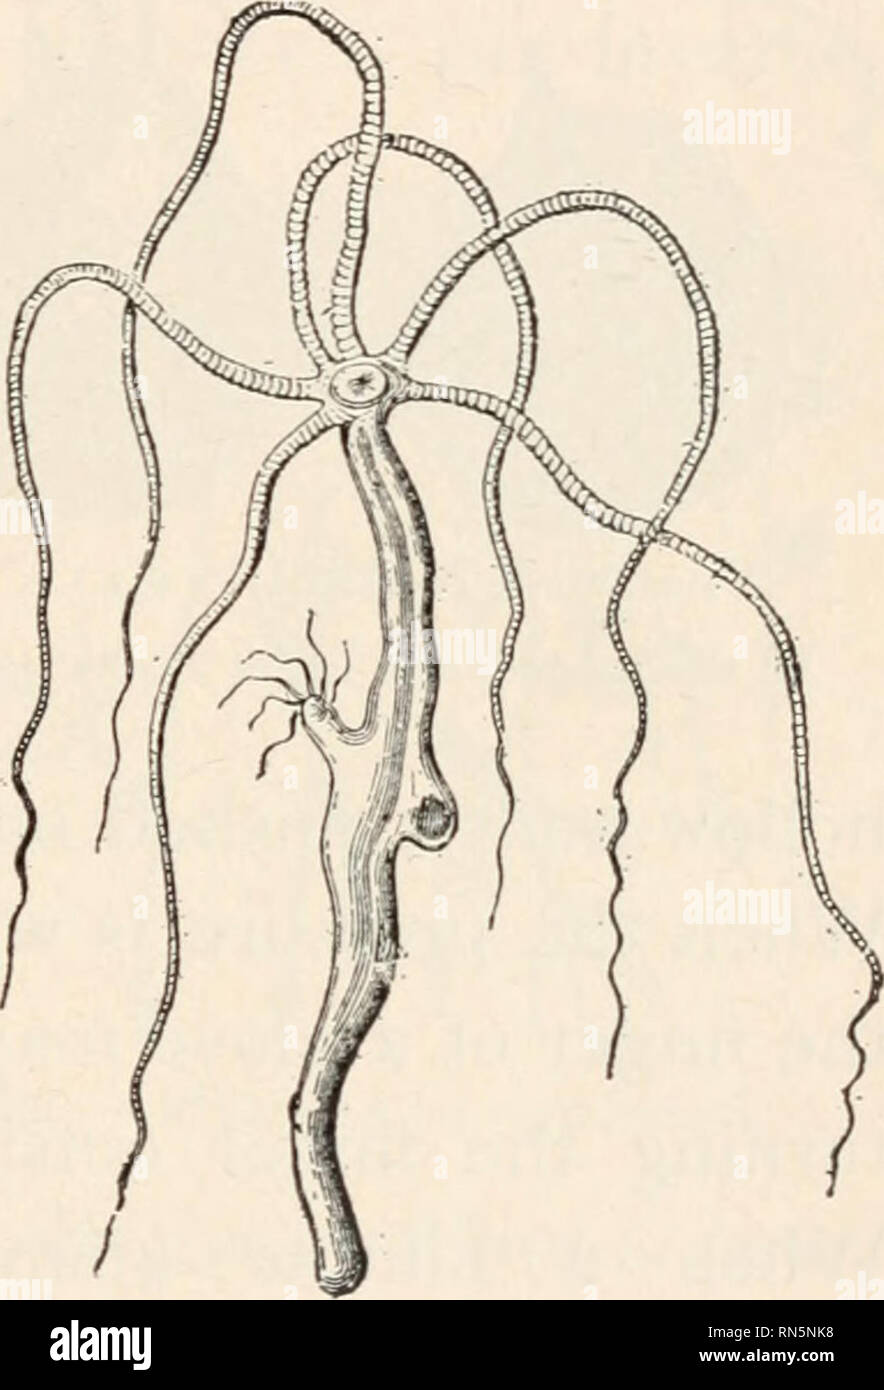 Hydra (genus) - Wikipedia